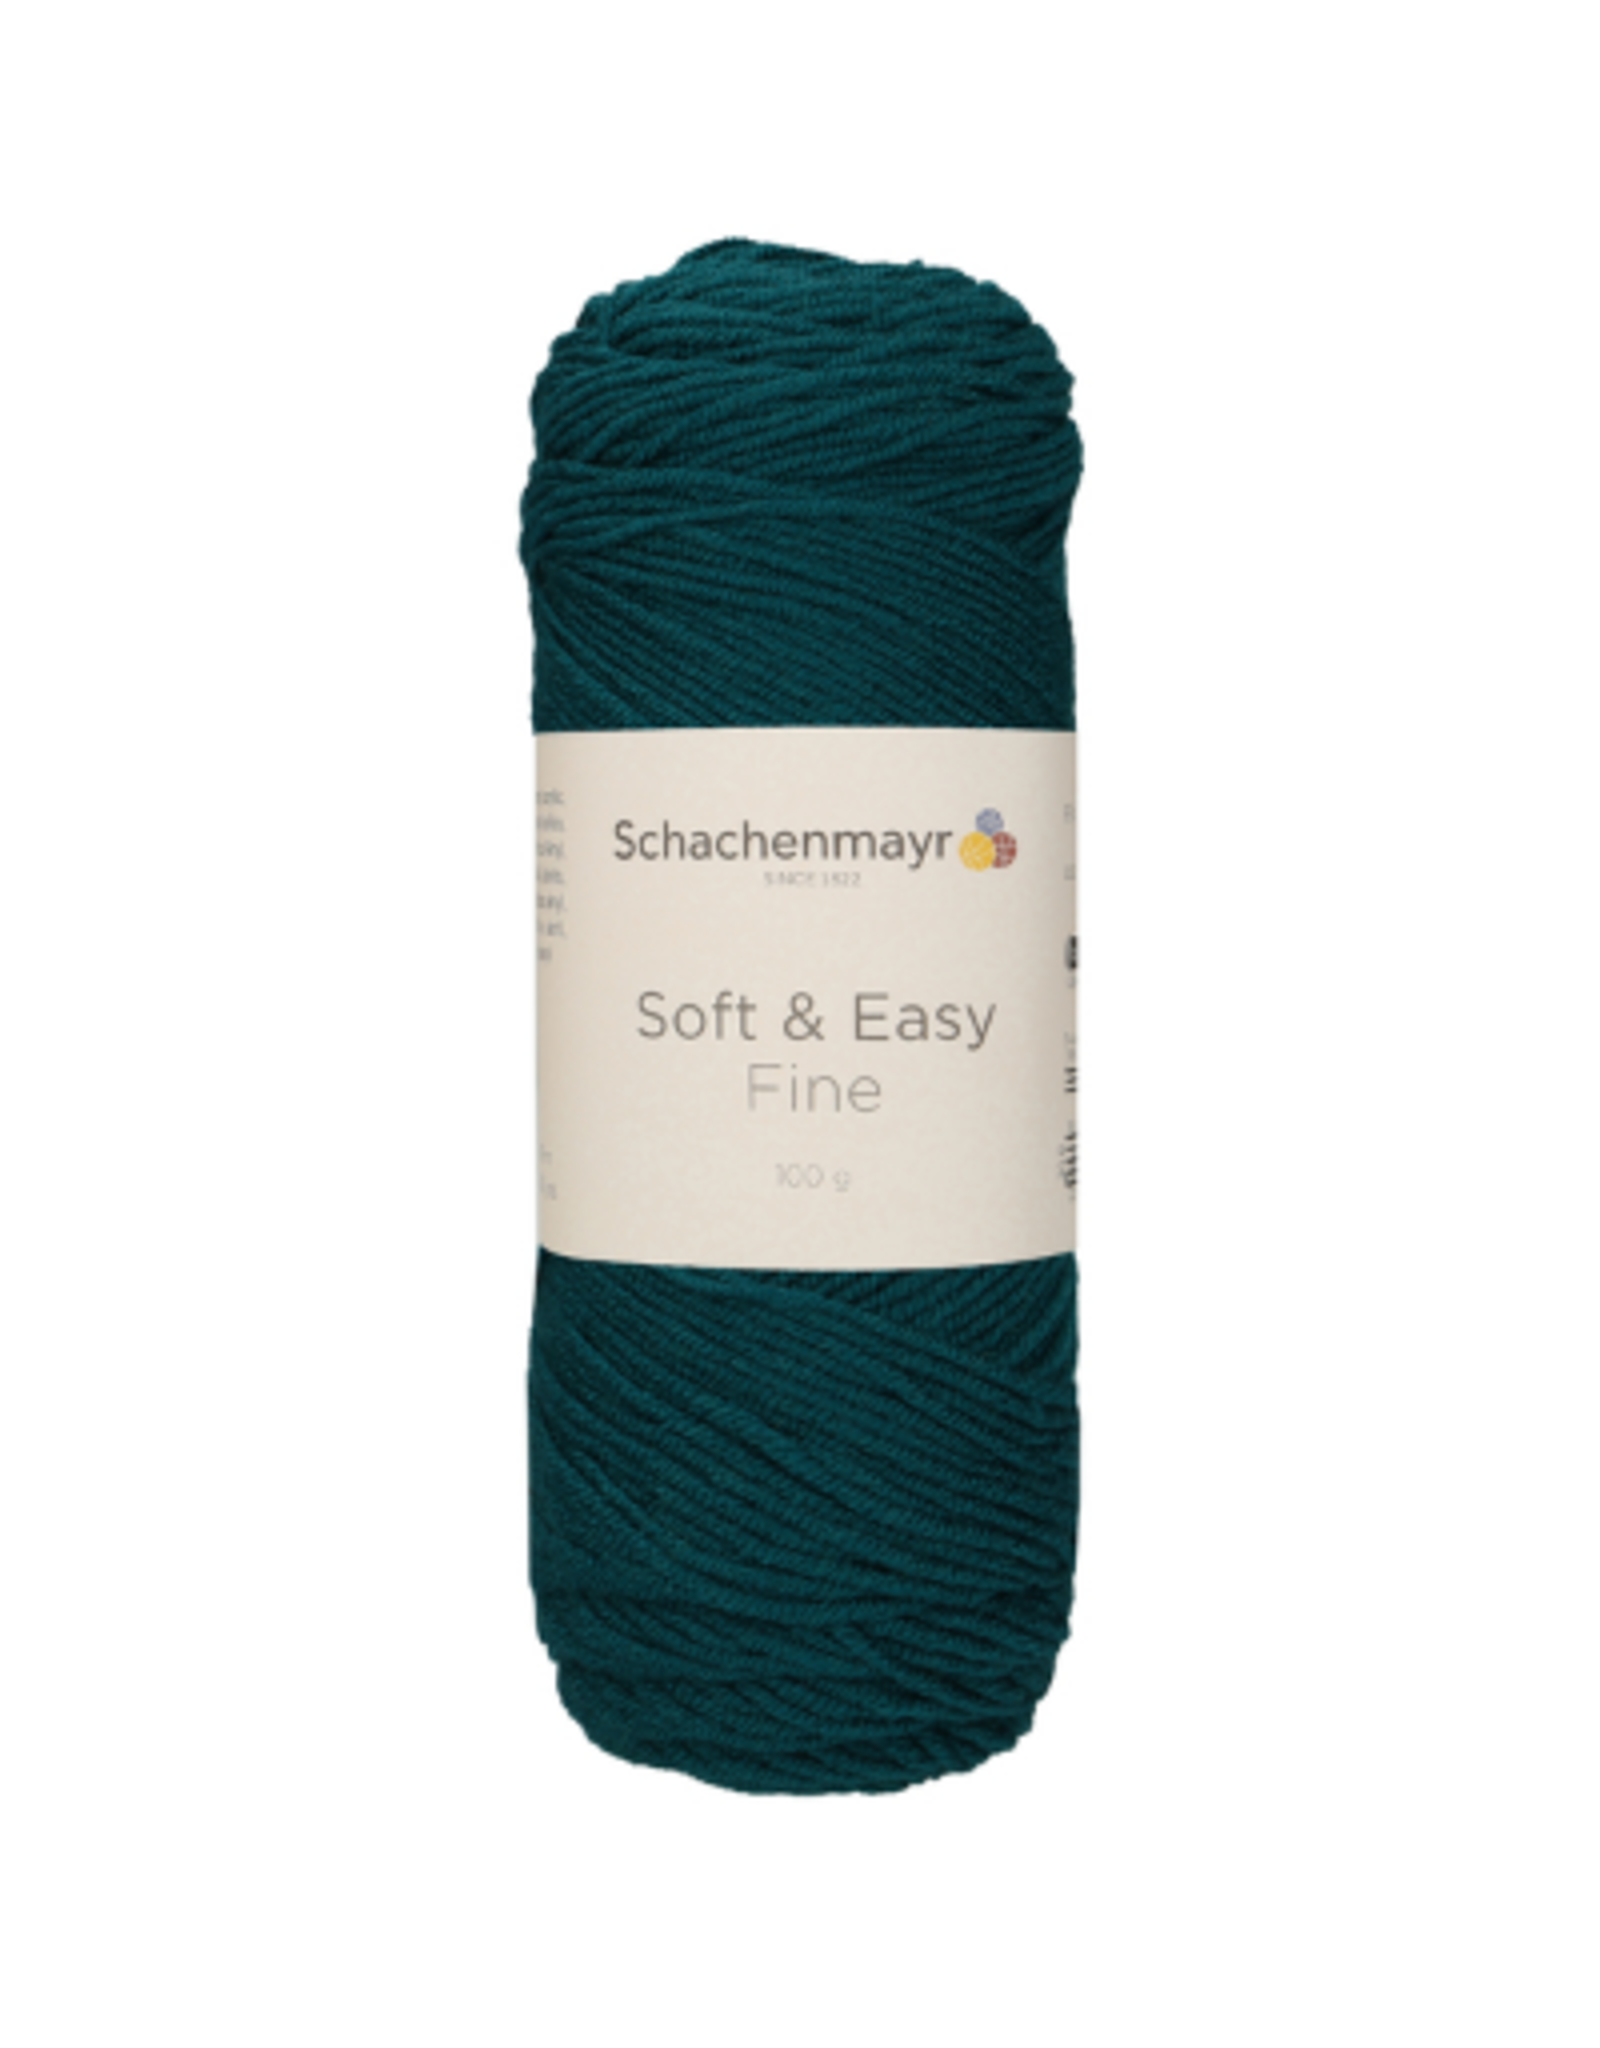 Schachenmayr Schachenmayr Soft & Easy fine 69